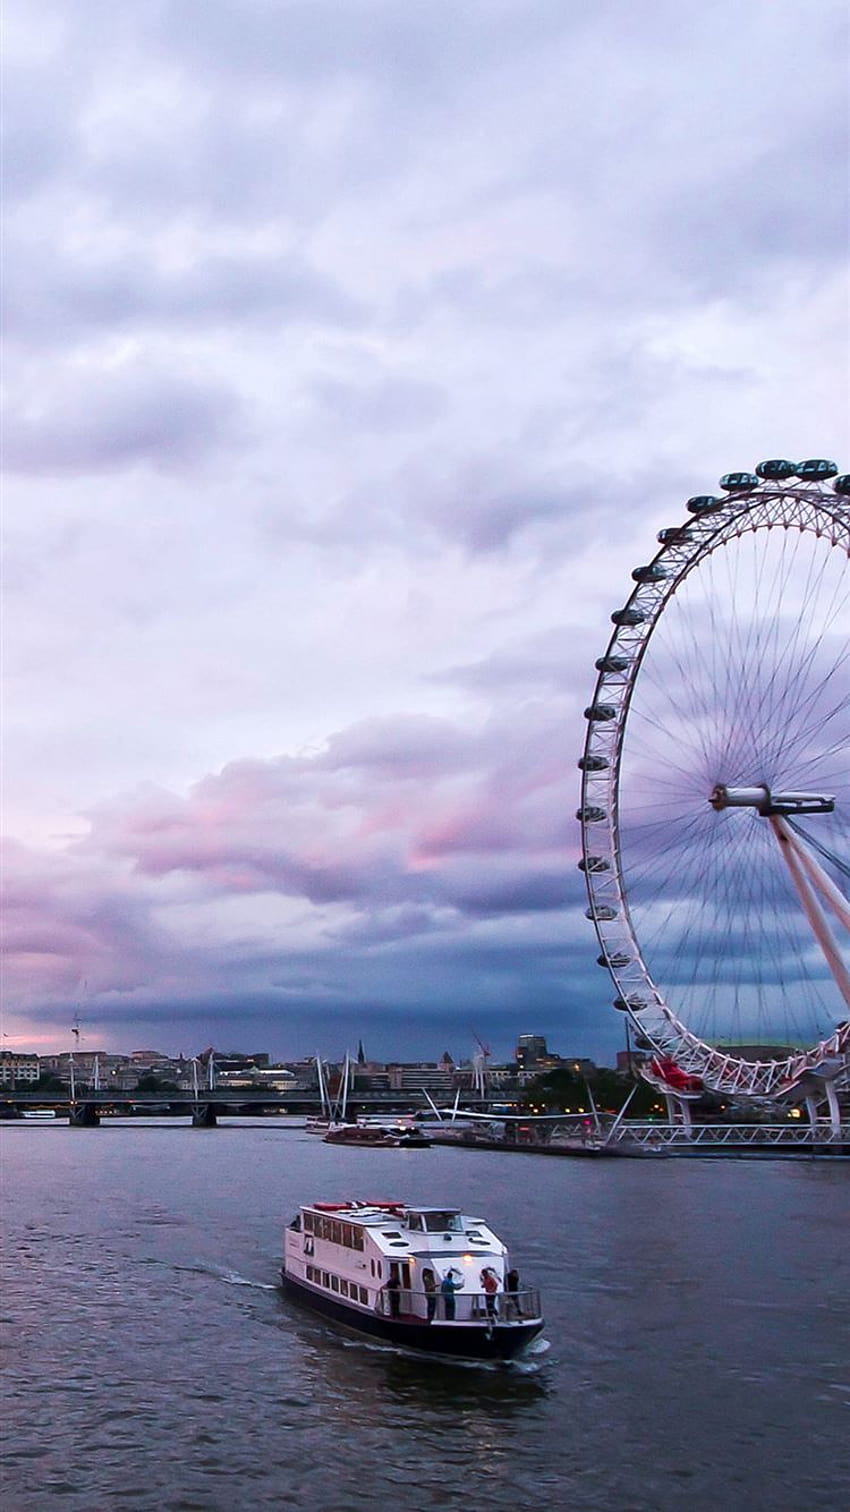 Bạn muốn có một hình nền iPhone 8 độc đáo với chủ đề về Luân Đôn? Hãy xem ngay bức ảnh liên quan để cảm nhận sự đẹp đẽ của thành phố này qua những tuyệt phẩm hình nền. Hình ảnh rõ nét và màu sắc tuyệt đẹp sẽ khiến cho màn hình iPhone 8 của bạn nổi bật hơn bao giờ hết.